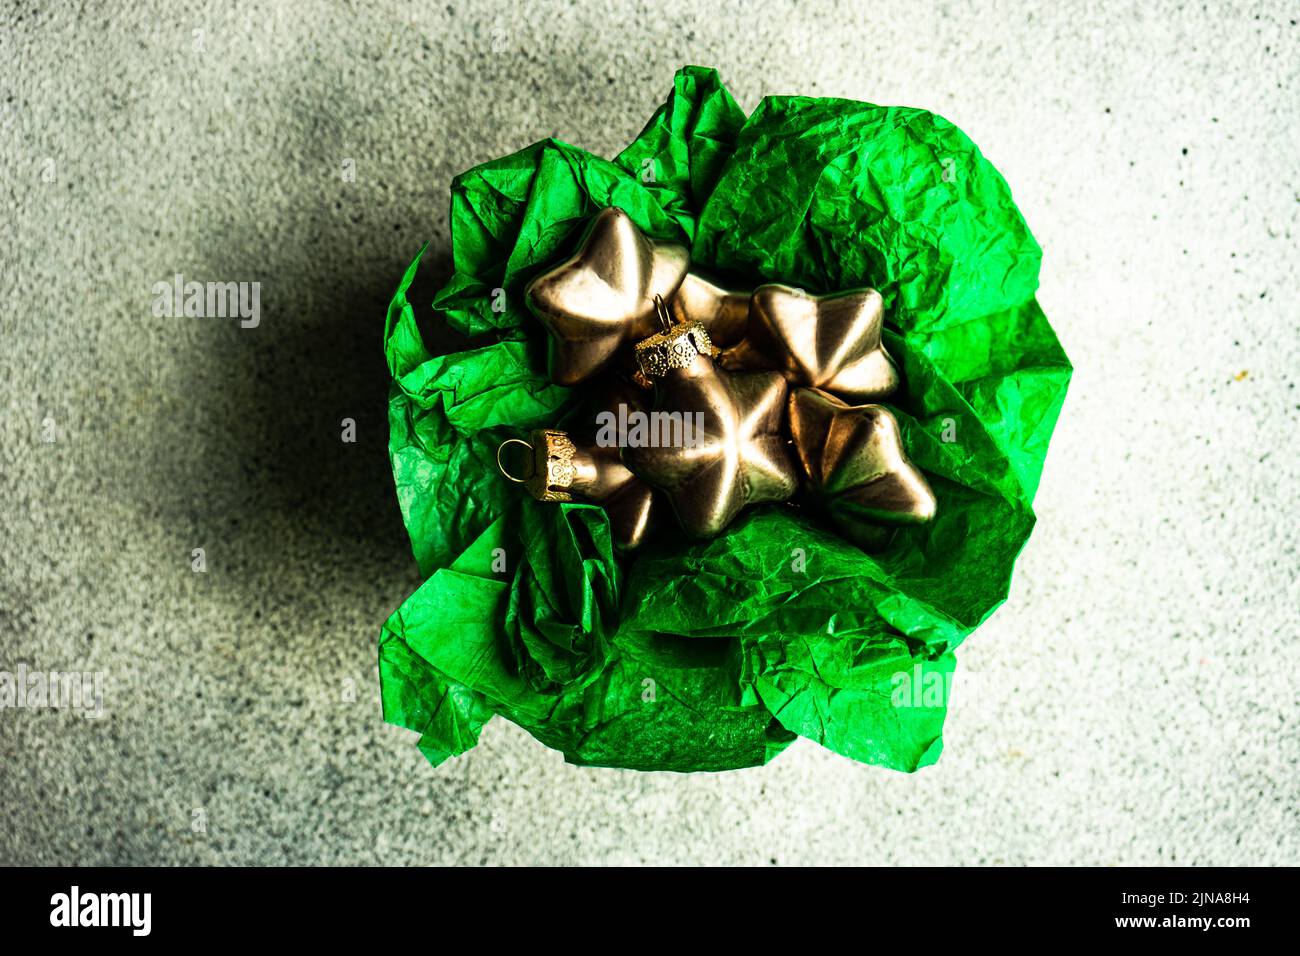 Caja de regalo rústica con bolas de Navidad en forma de estrella de bronce en papel de envoltura verde en la caja sobre fondo de hormigón Foto de stock